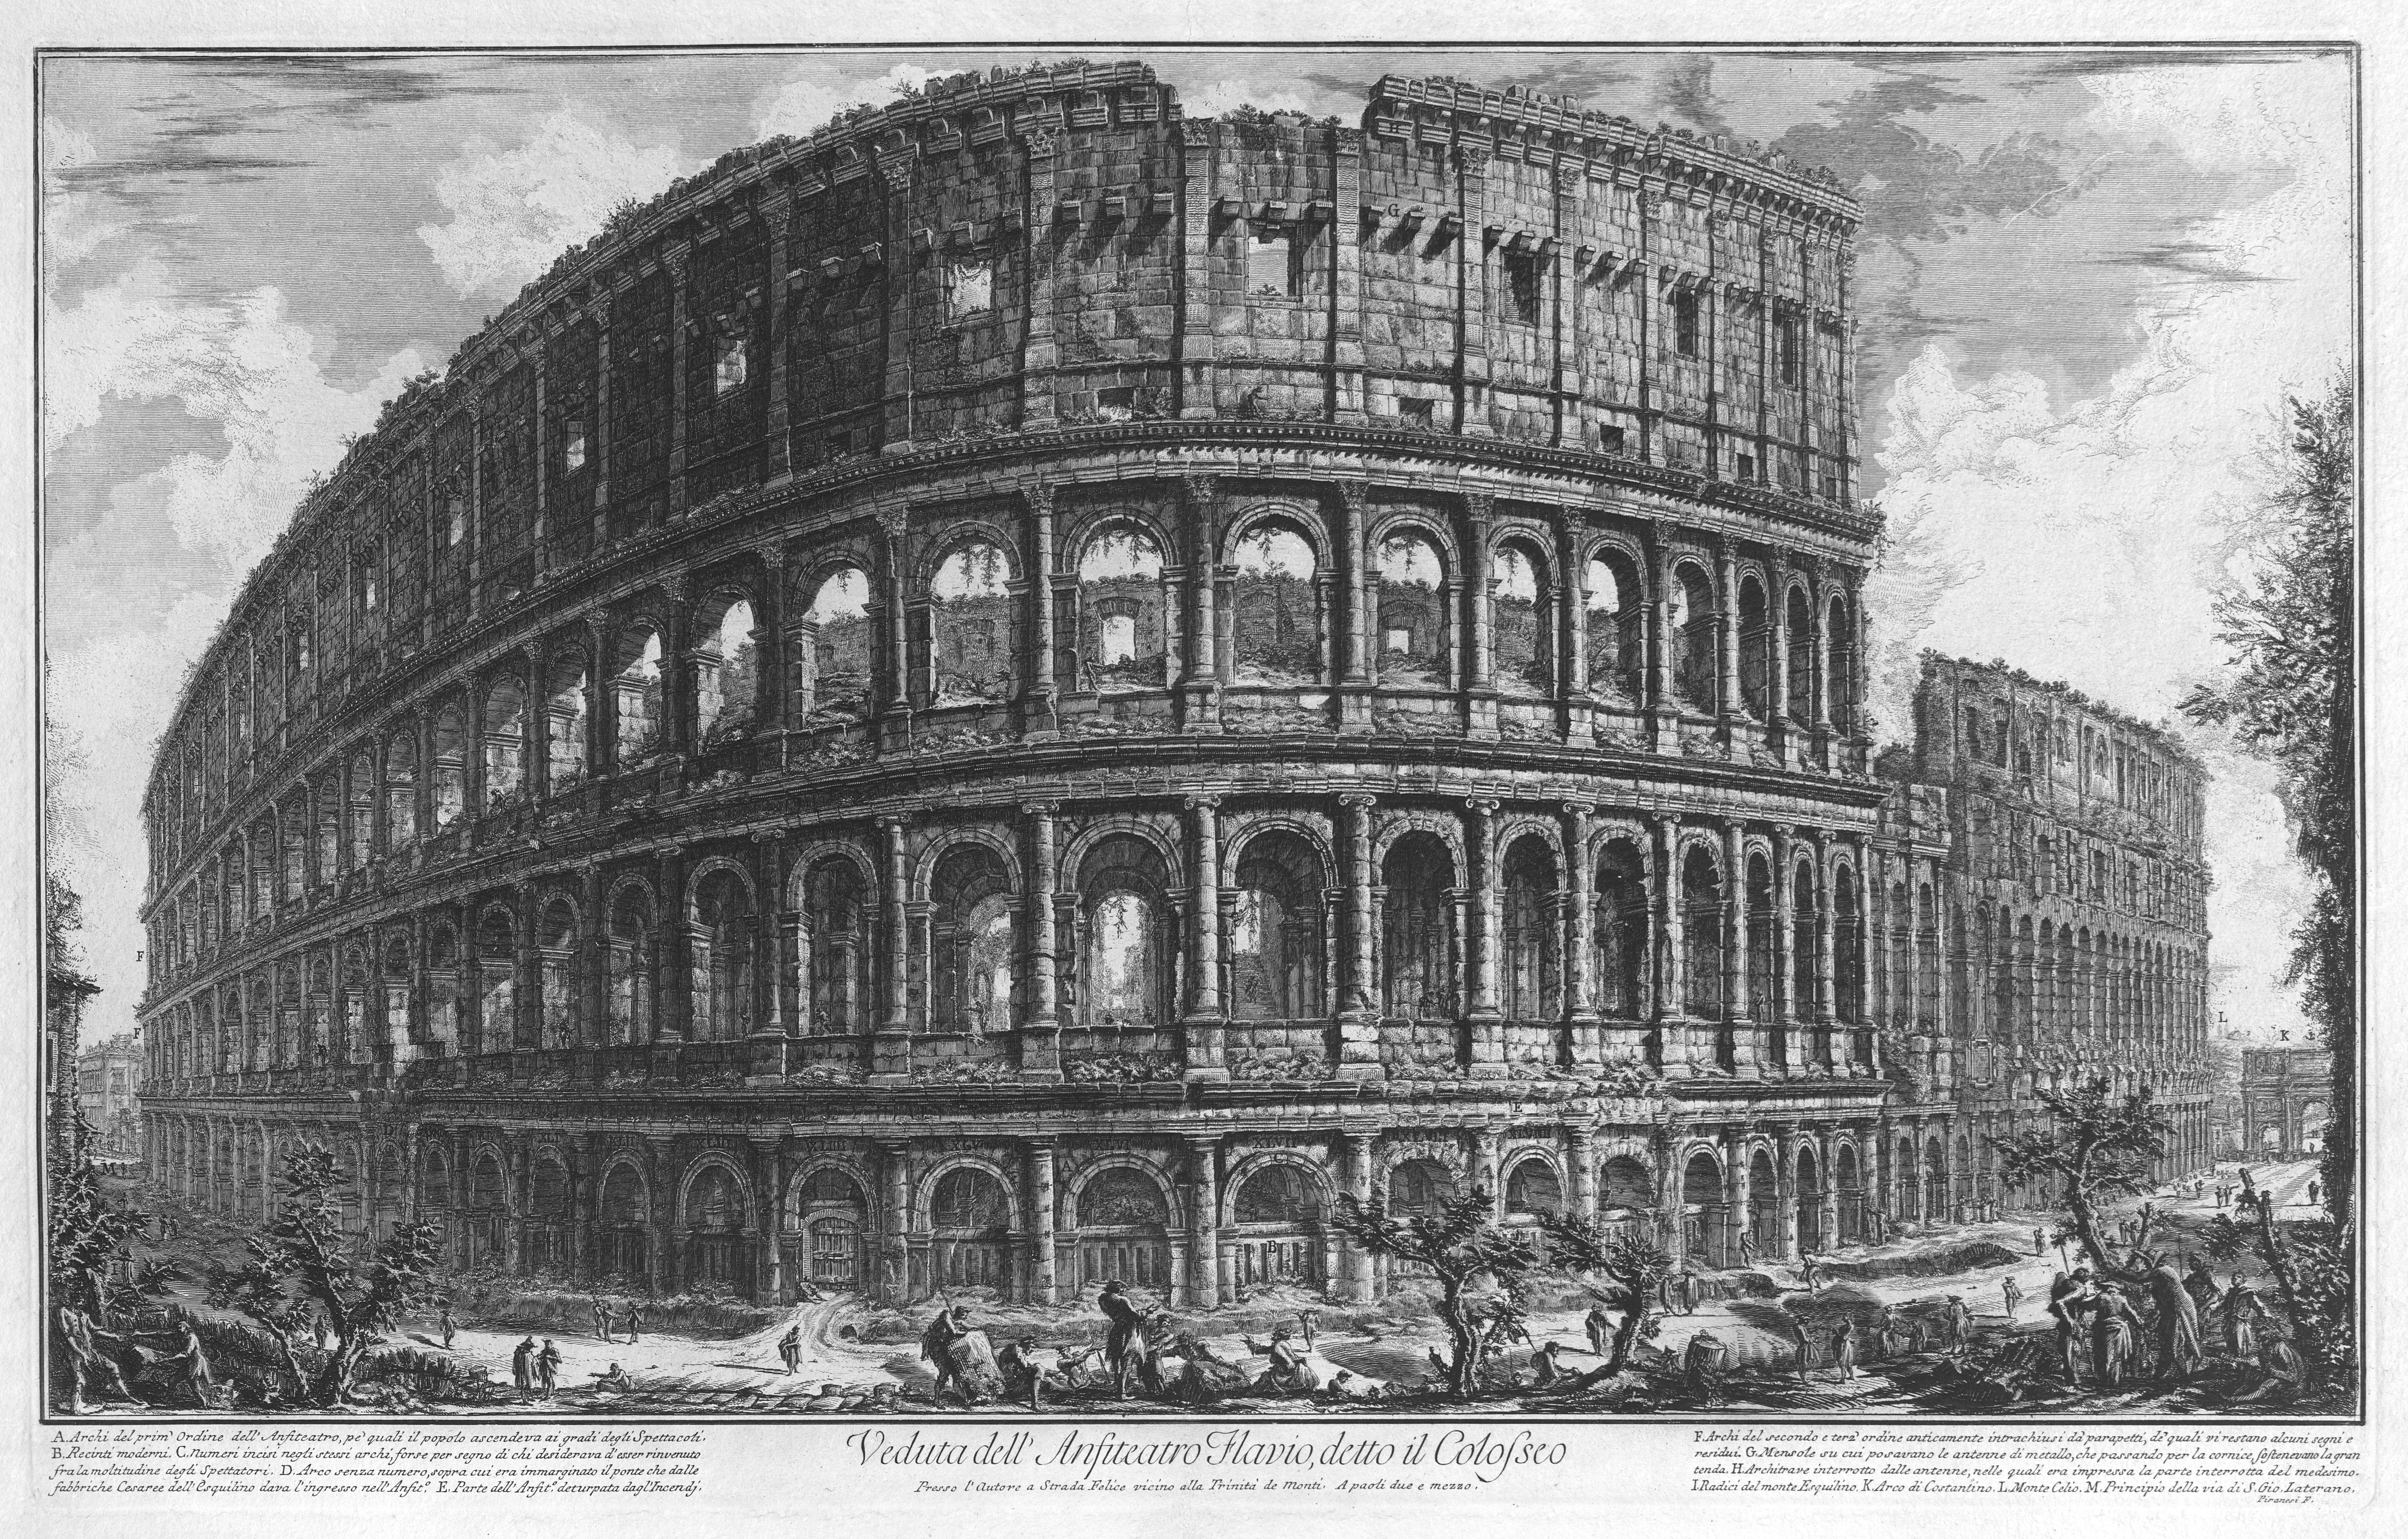 The Colosseum by Giovanni Battista Piranesi